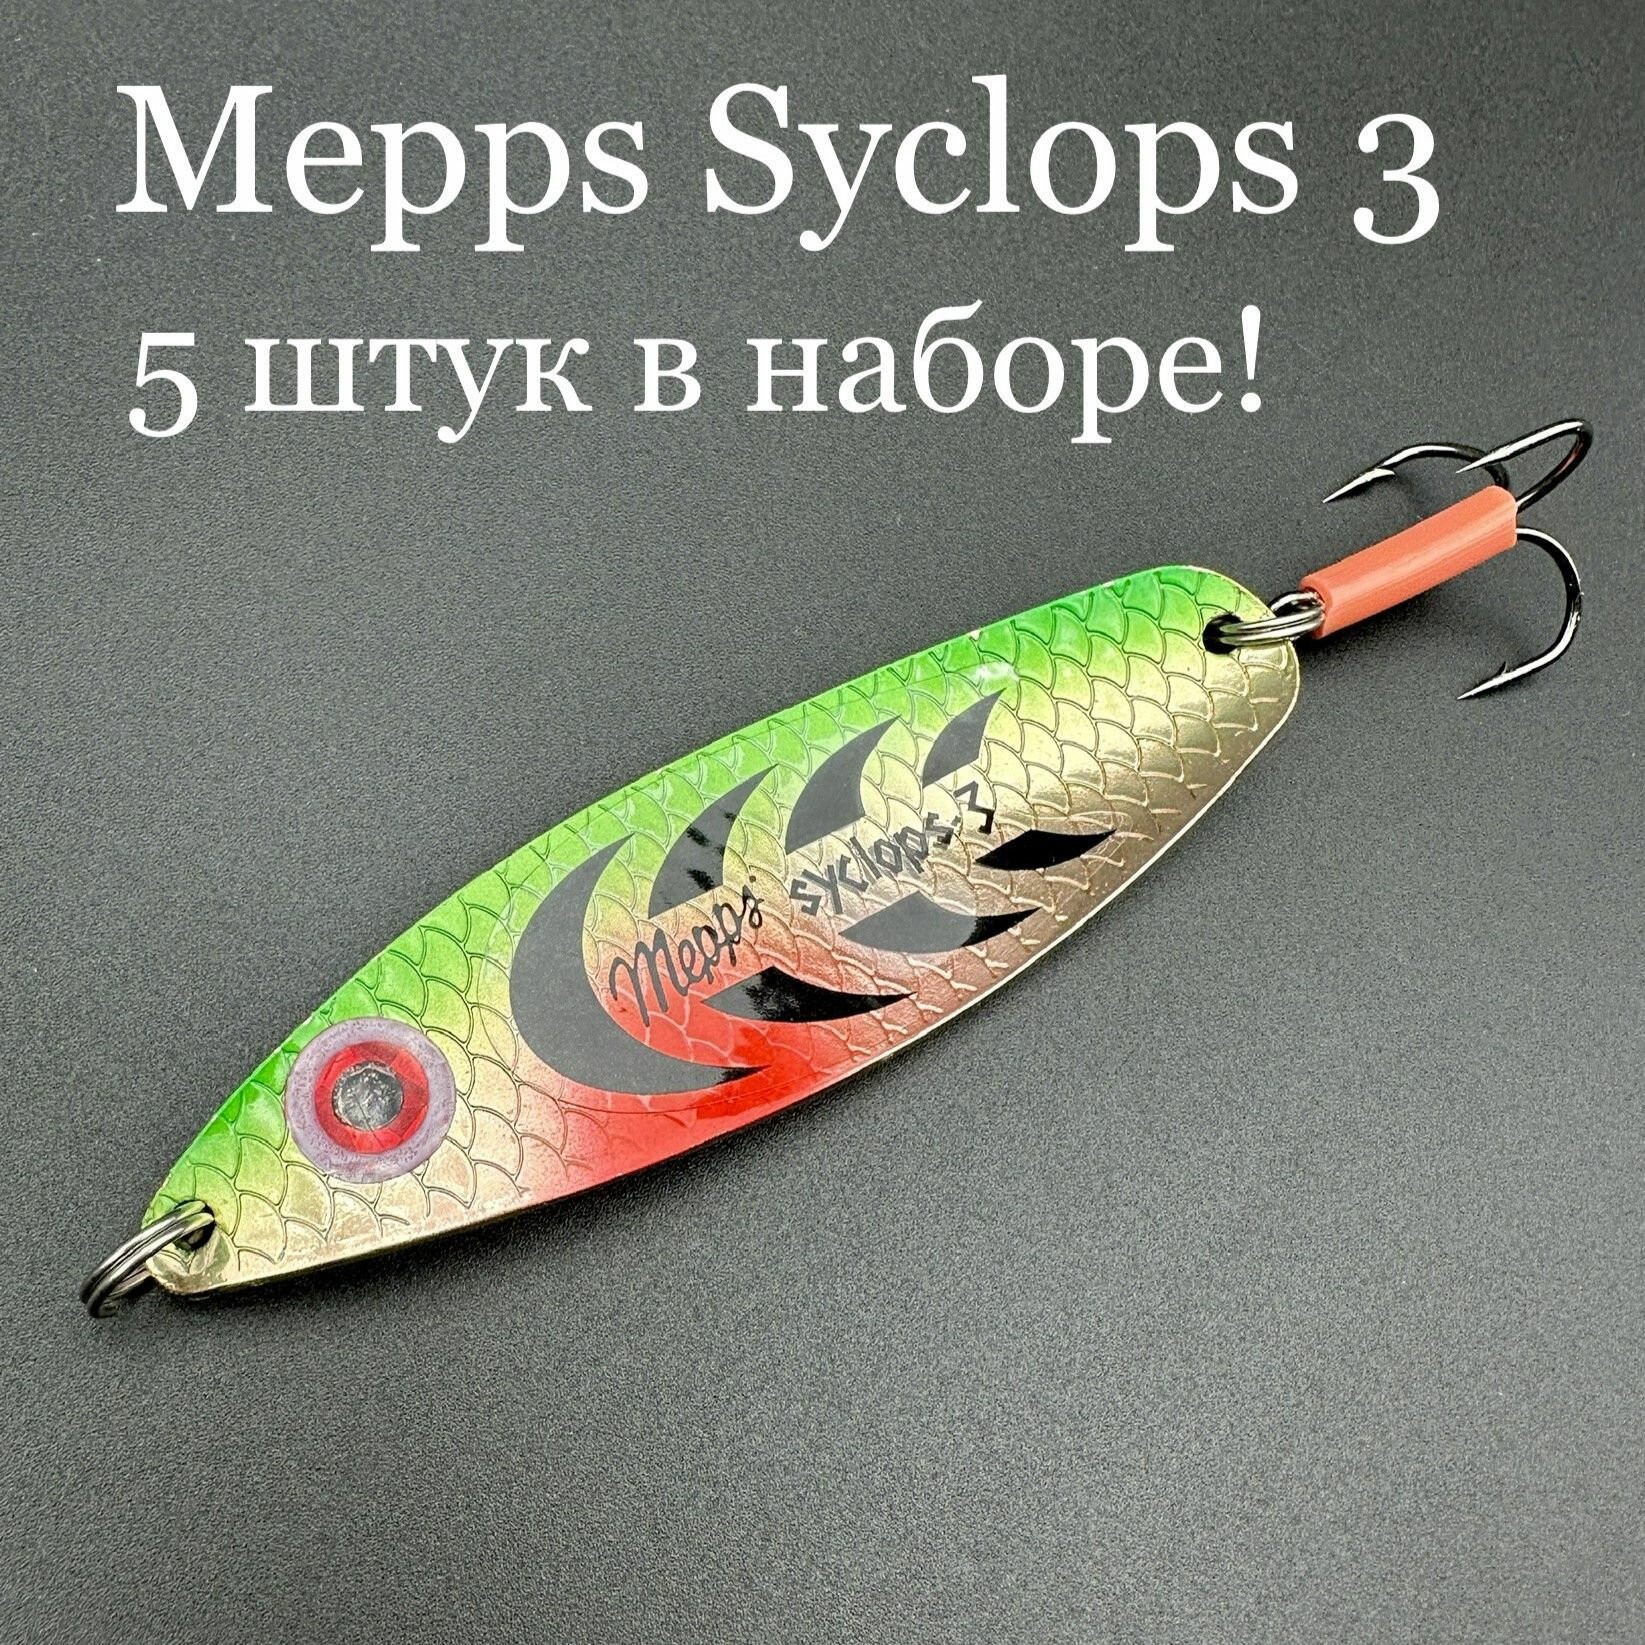 Набор из 5 блесен Mepps Syclops 3 колебалок для рыбалки на хищника кумжу, семгу, лосось, окунь, щука, судак, берш сом сазан